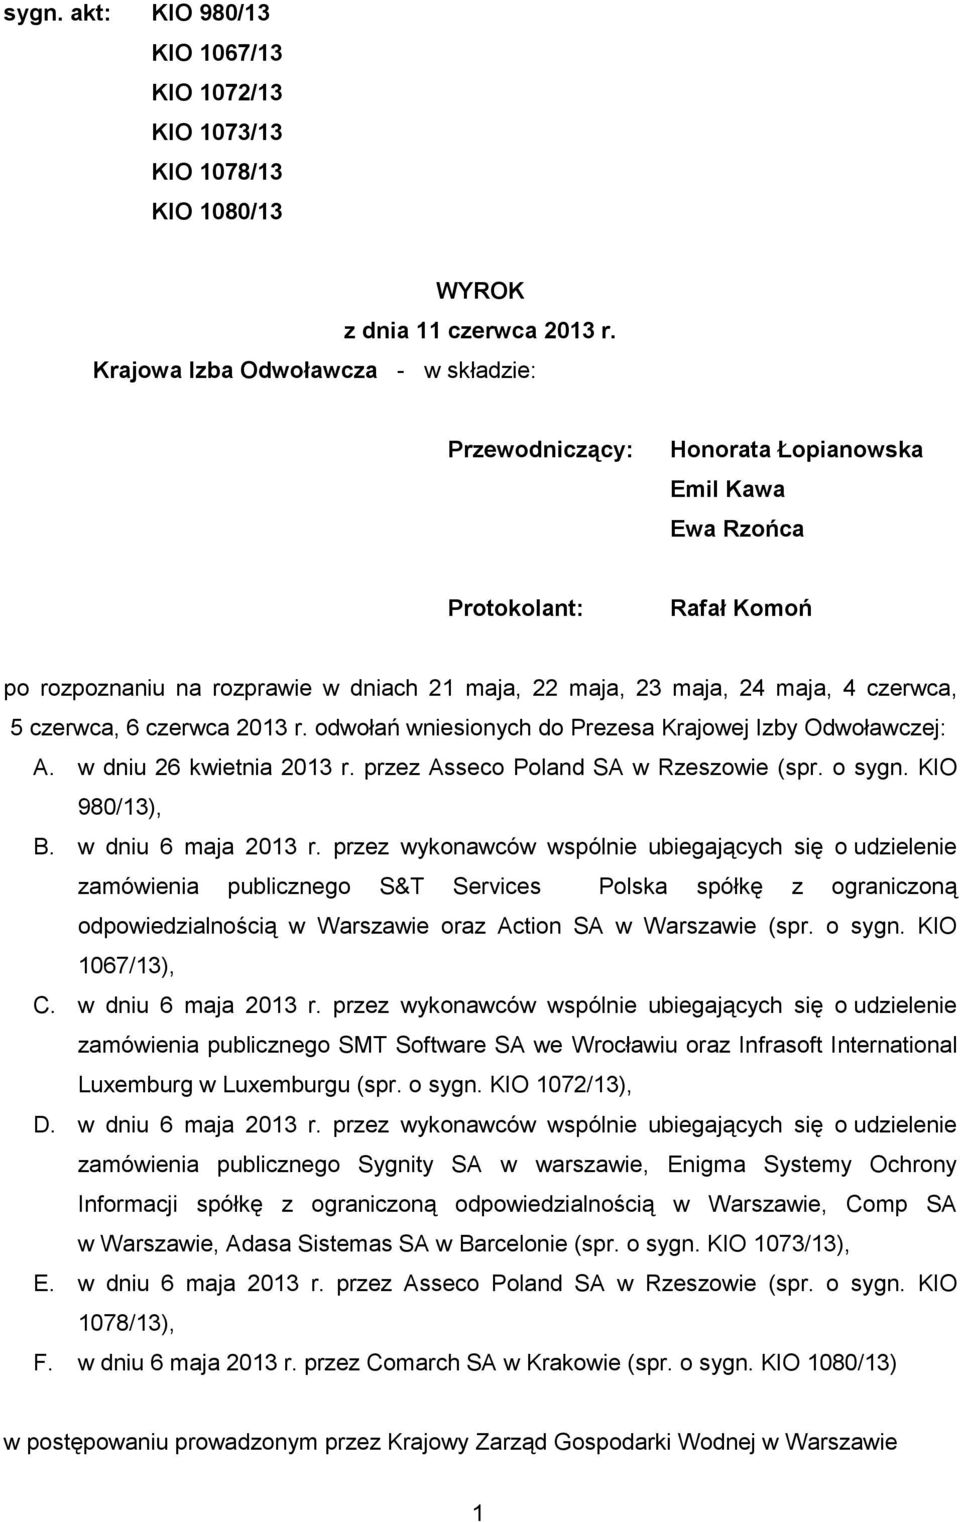 czerwca, 5 czerwca, 6 czerwca 2013 r. odwołań wniesionych do Prezesa Krajowej Izby Odwoławczej: A. w dniu 26 kwietnia 2013 r. przez Asseco Poland SA w Rzeszowie (spr. o sygn. KIO 980/13), B.